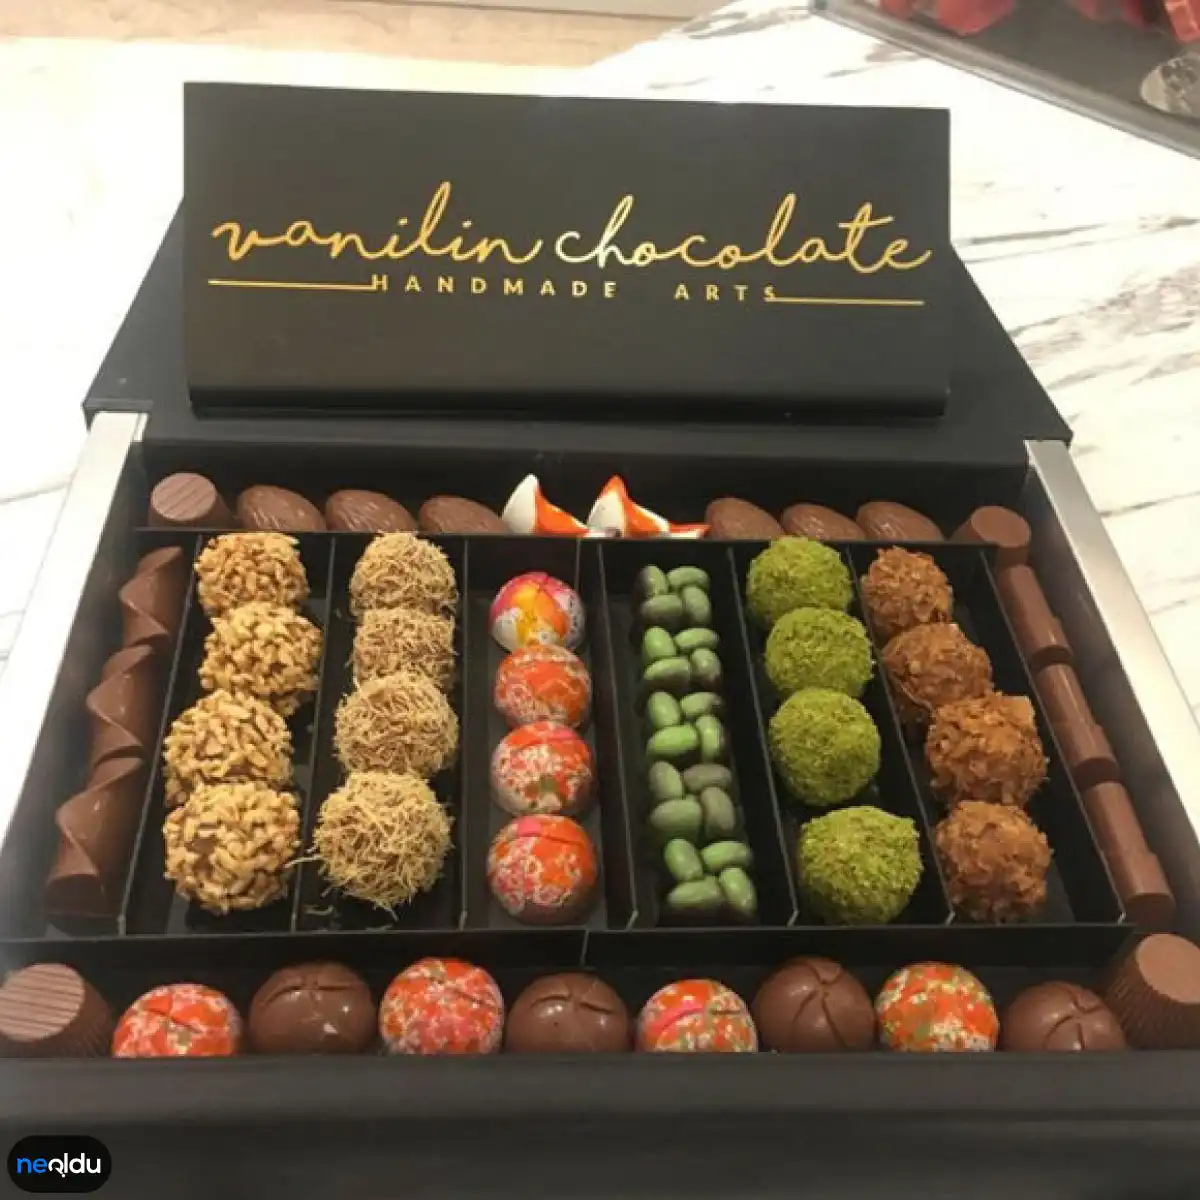 İstanbul'un En İyi Çikolatacıları